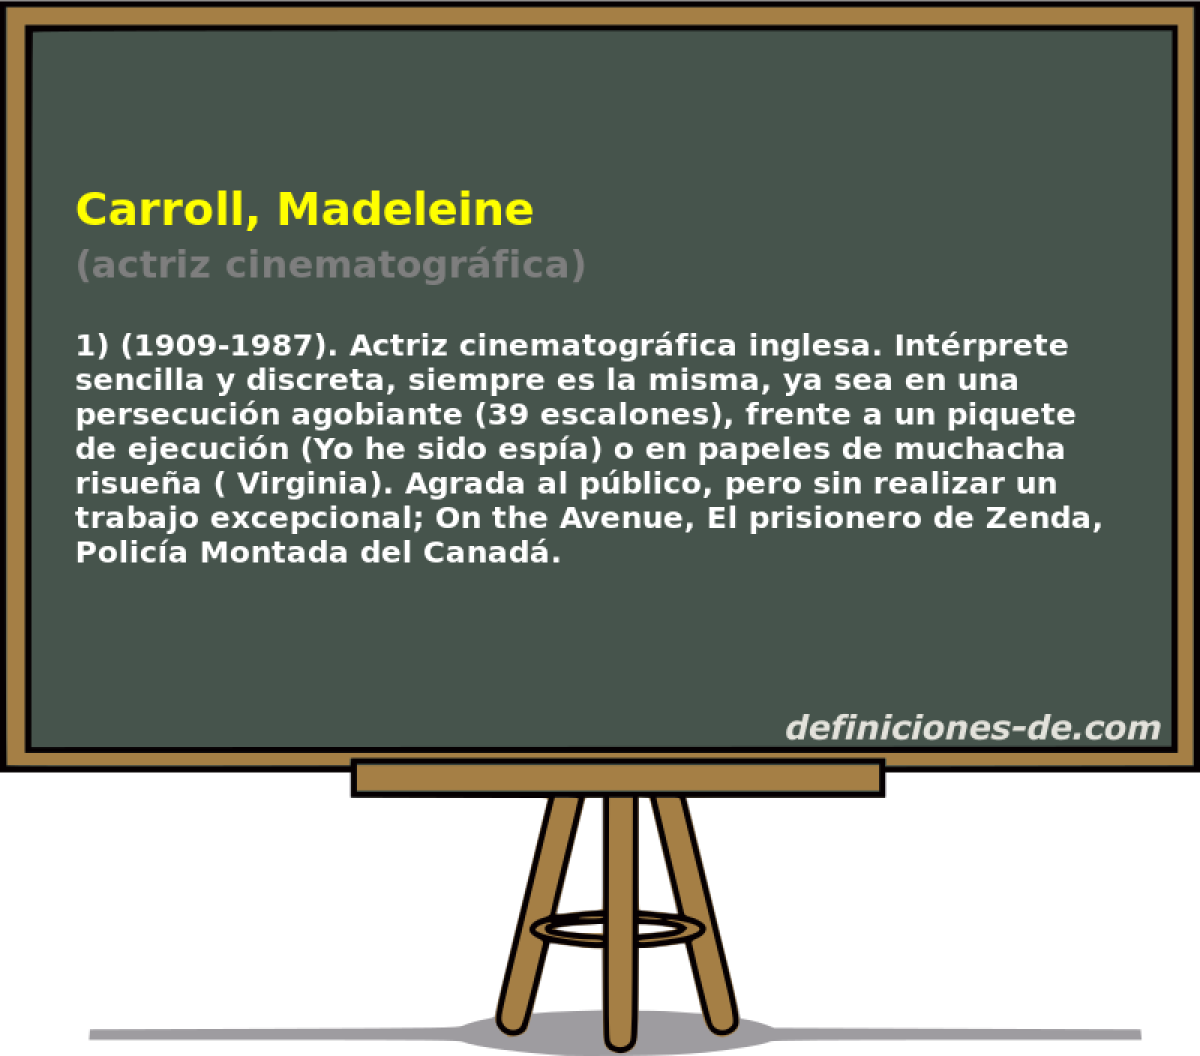 Carroll, Madeleine (actriz cinematogrfica)